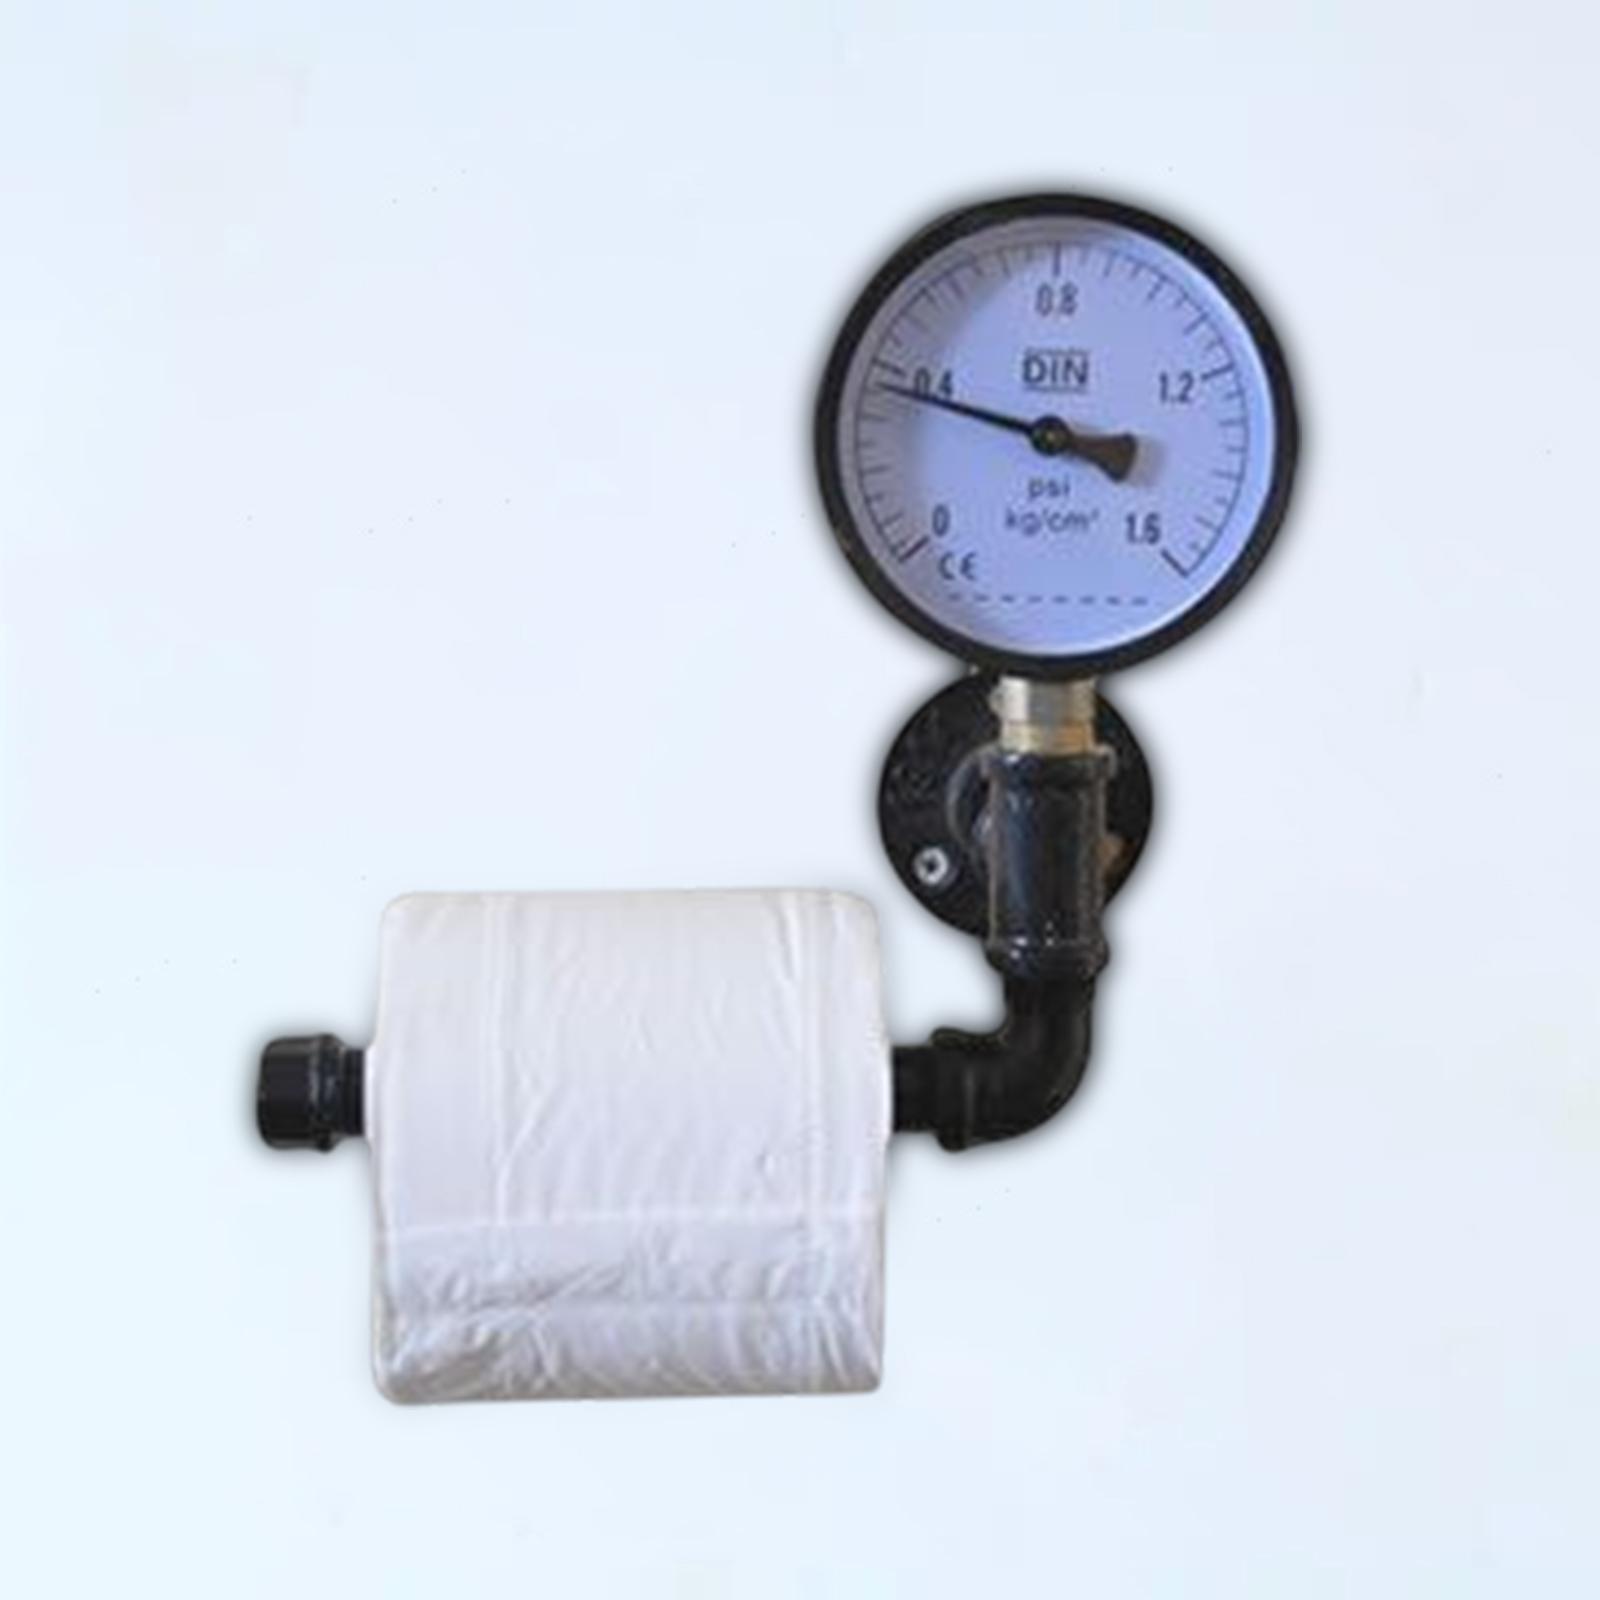 Toilet Paper Roll Holder Mounted Shelf Industrial for Bedroom Washroom